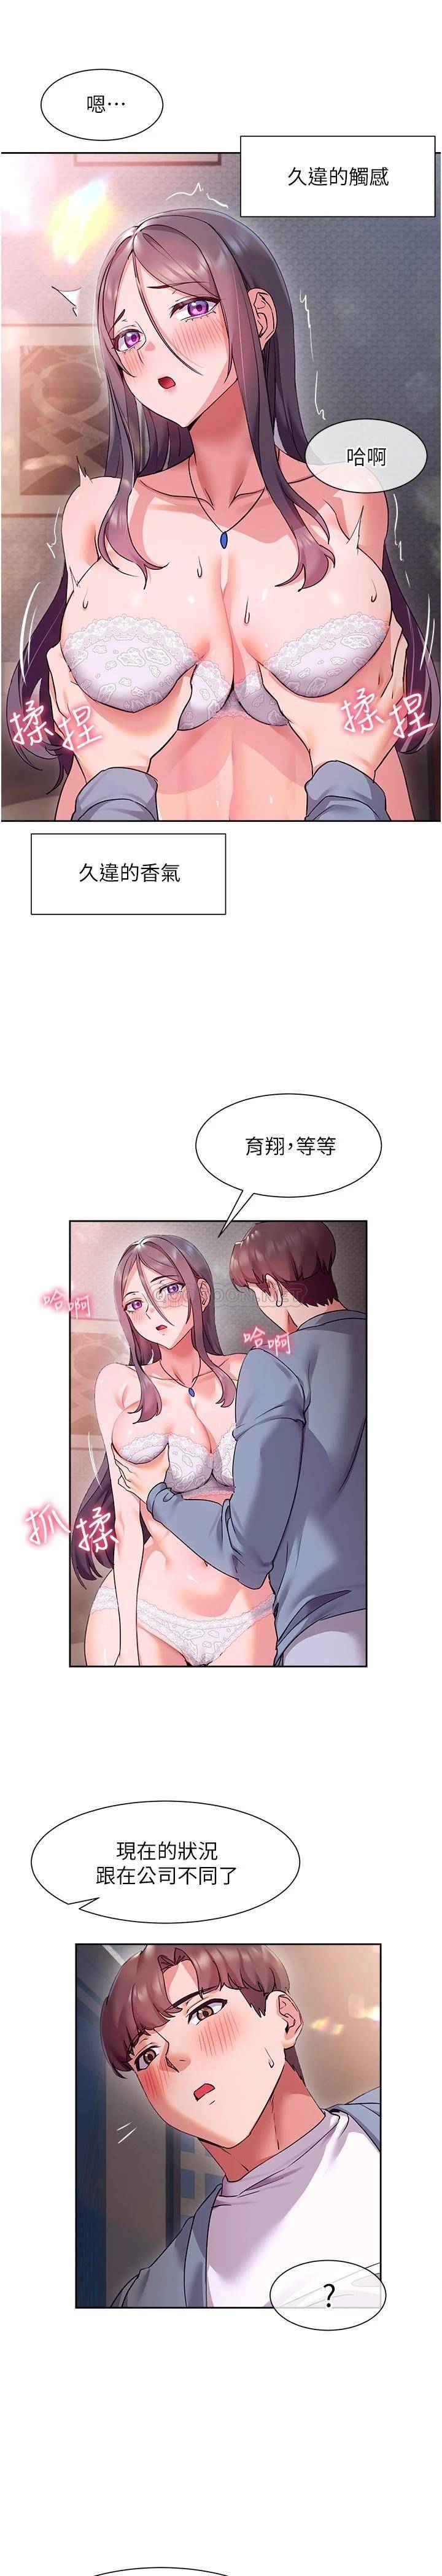 韩国污漫画 現上教學 第12话让你体验乳交的快感! 19